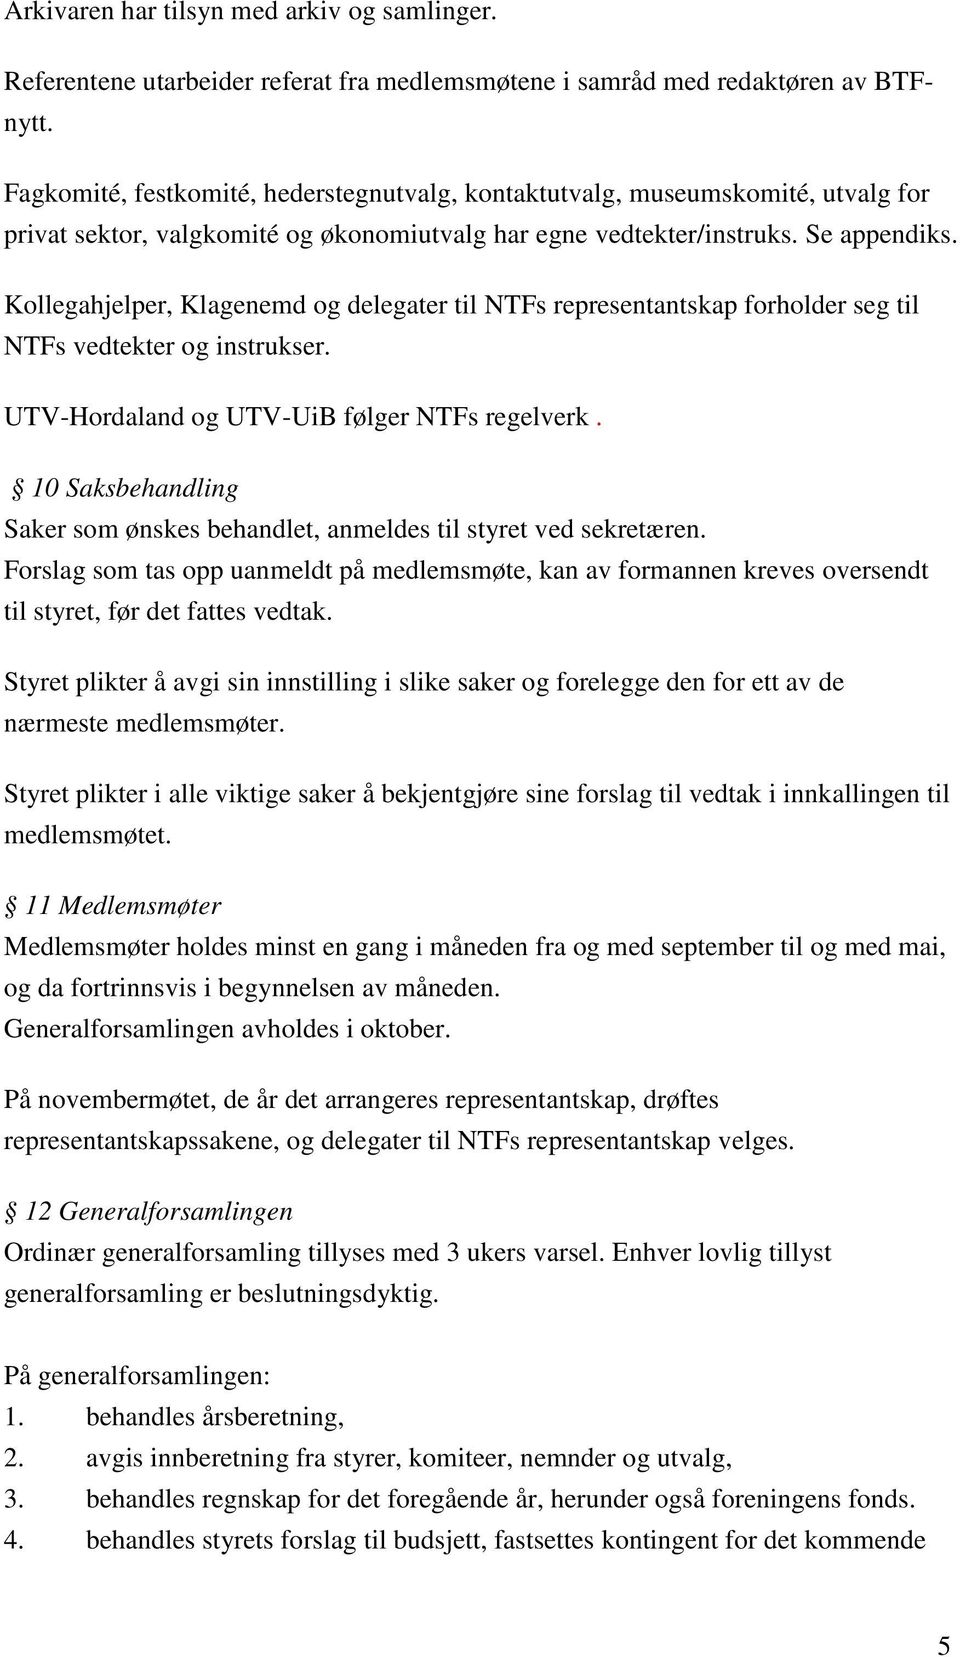 Kollegahjelper, Klagenemd og delegater til NTFs representantskap forholder seg til NTFs vedtekter og instrukser. UTV-Hordaland og UTV-UiB følger NTFs regelverk.